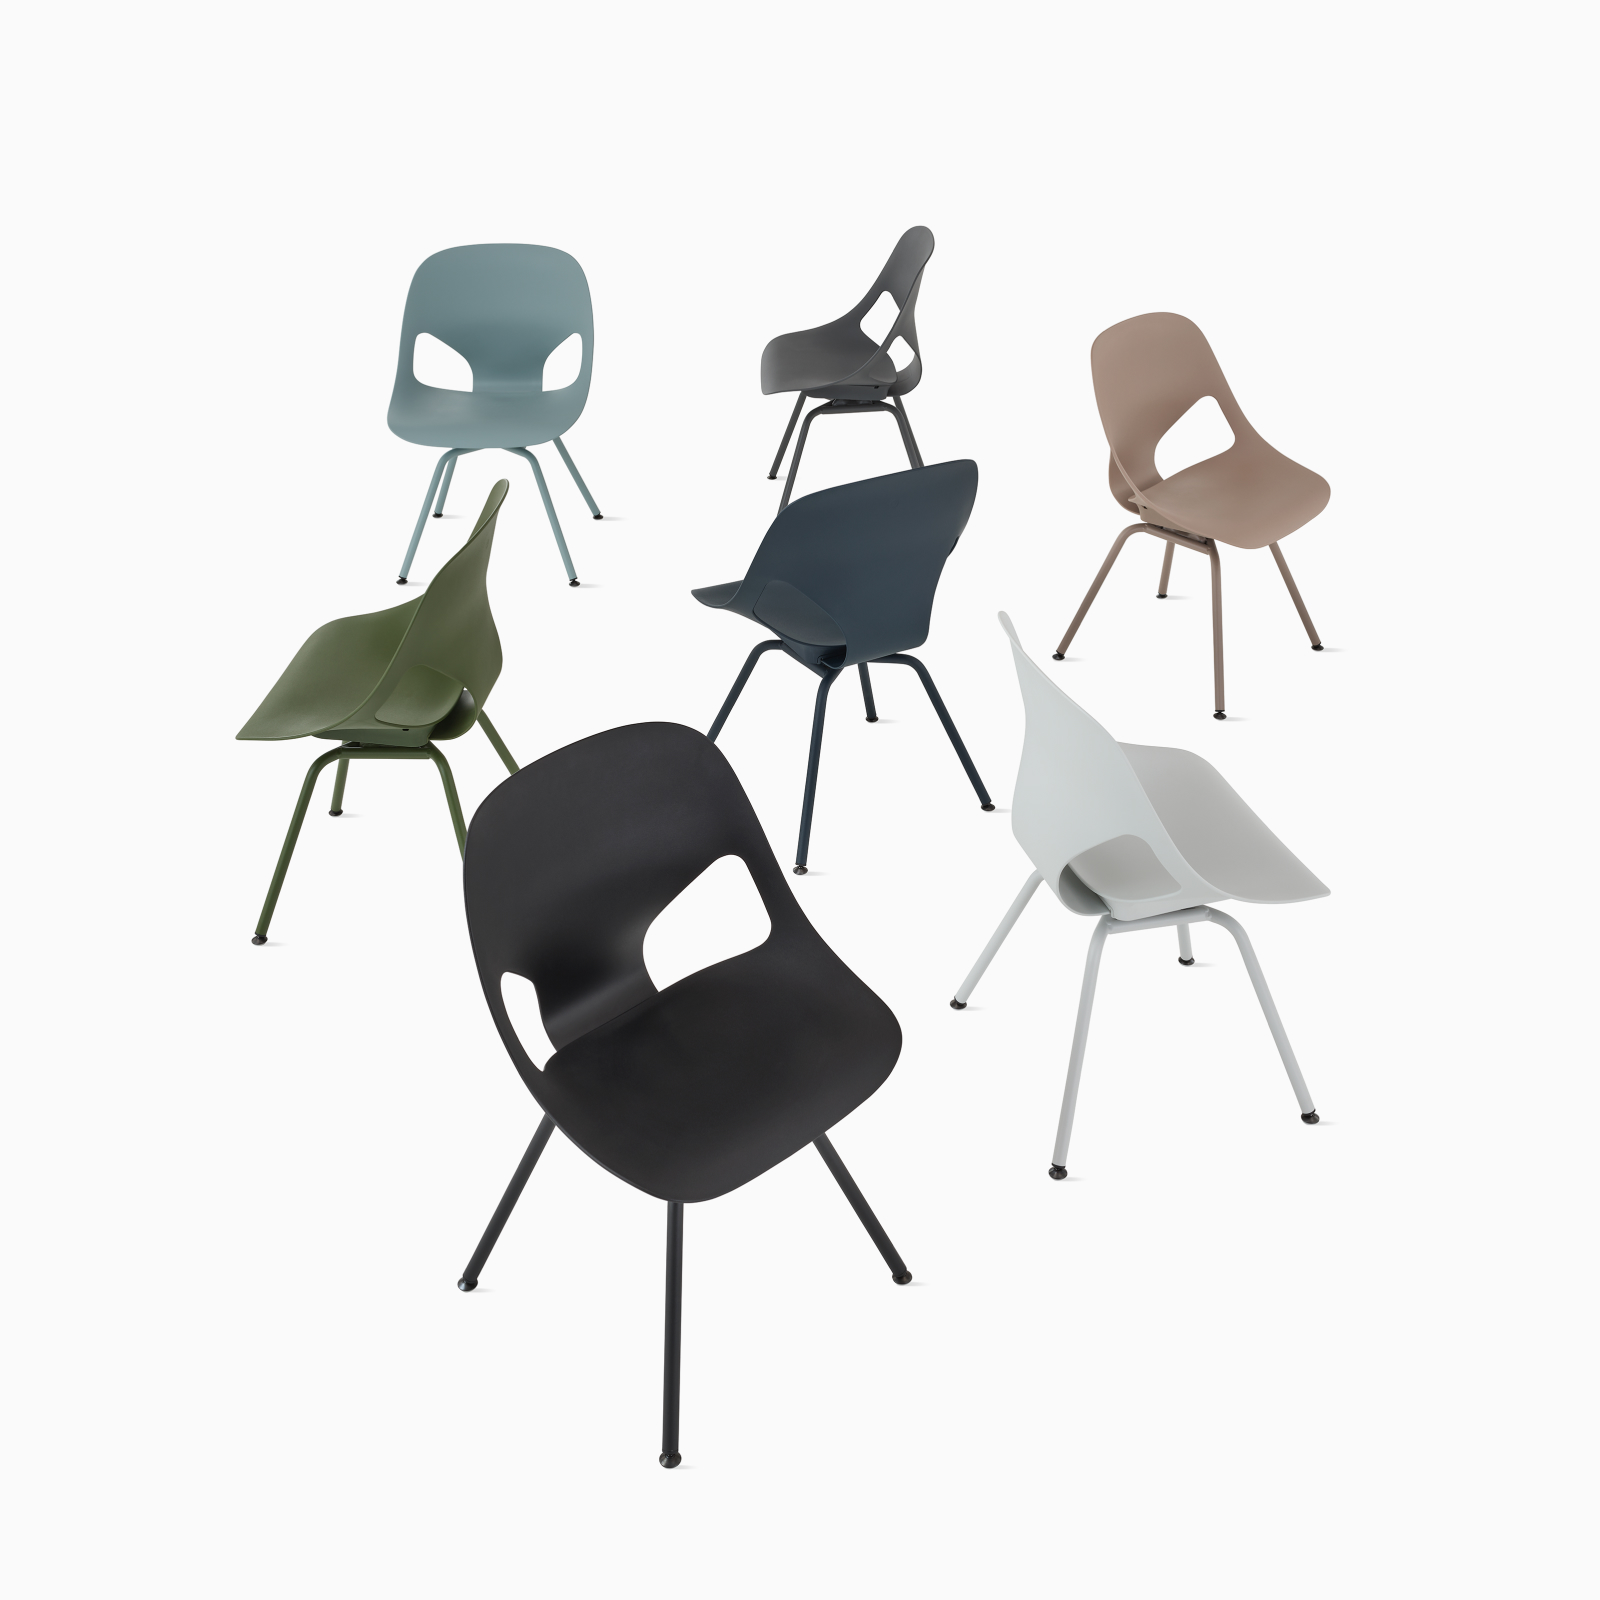 Un grupo de siete sillas para visitas Zeph sin brazos, en todos los colores disponibles.